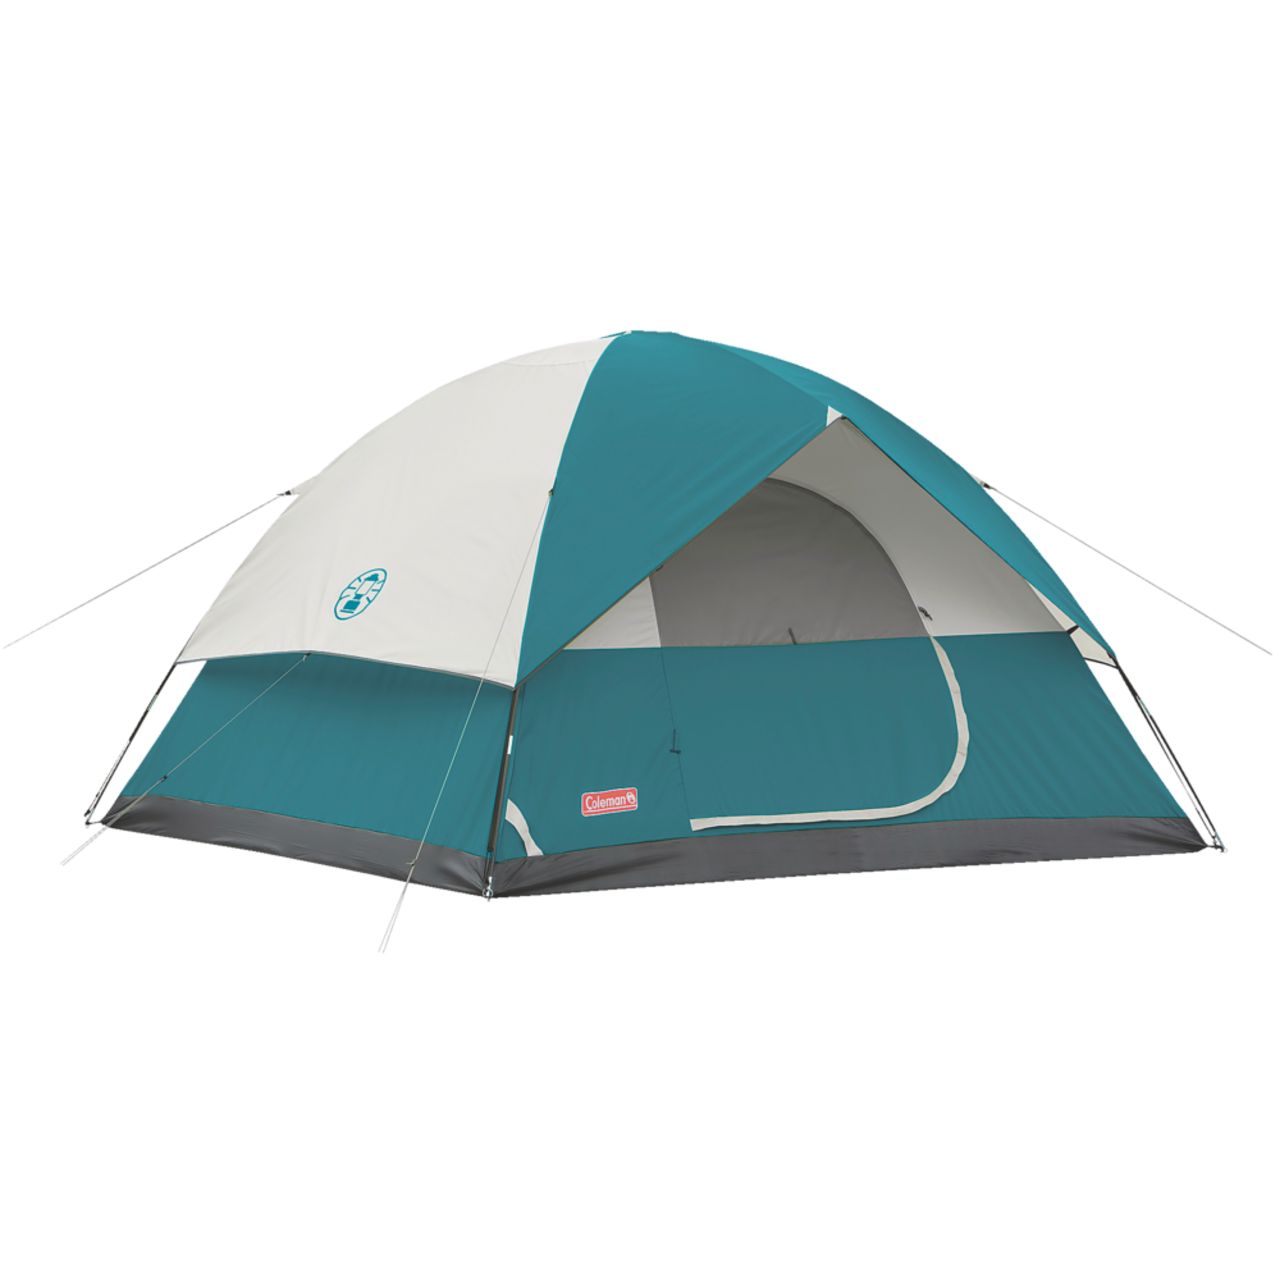 Camping Tents  Walmart Canada